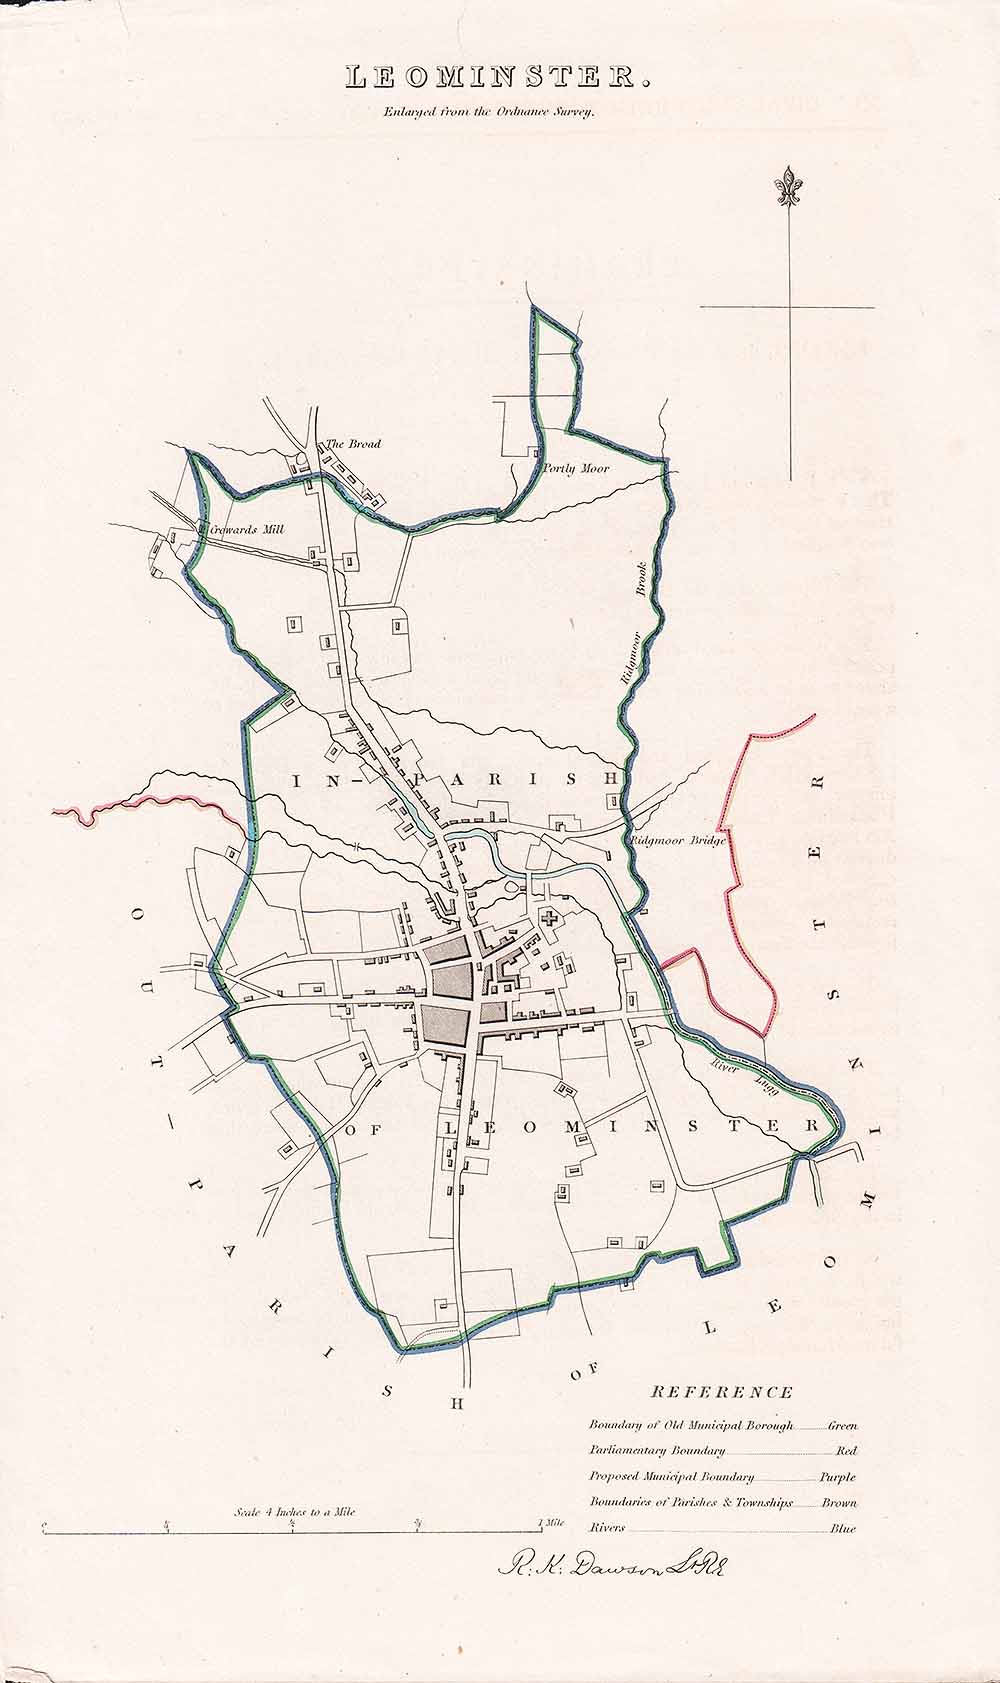 Leominster Town Plan - RK Dawson 